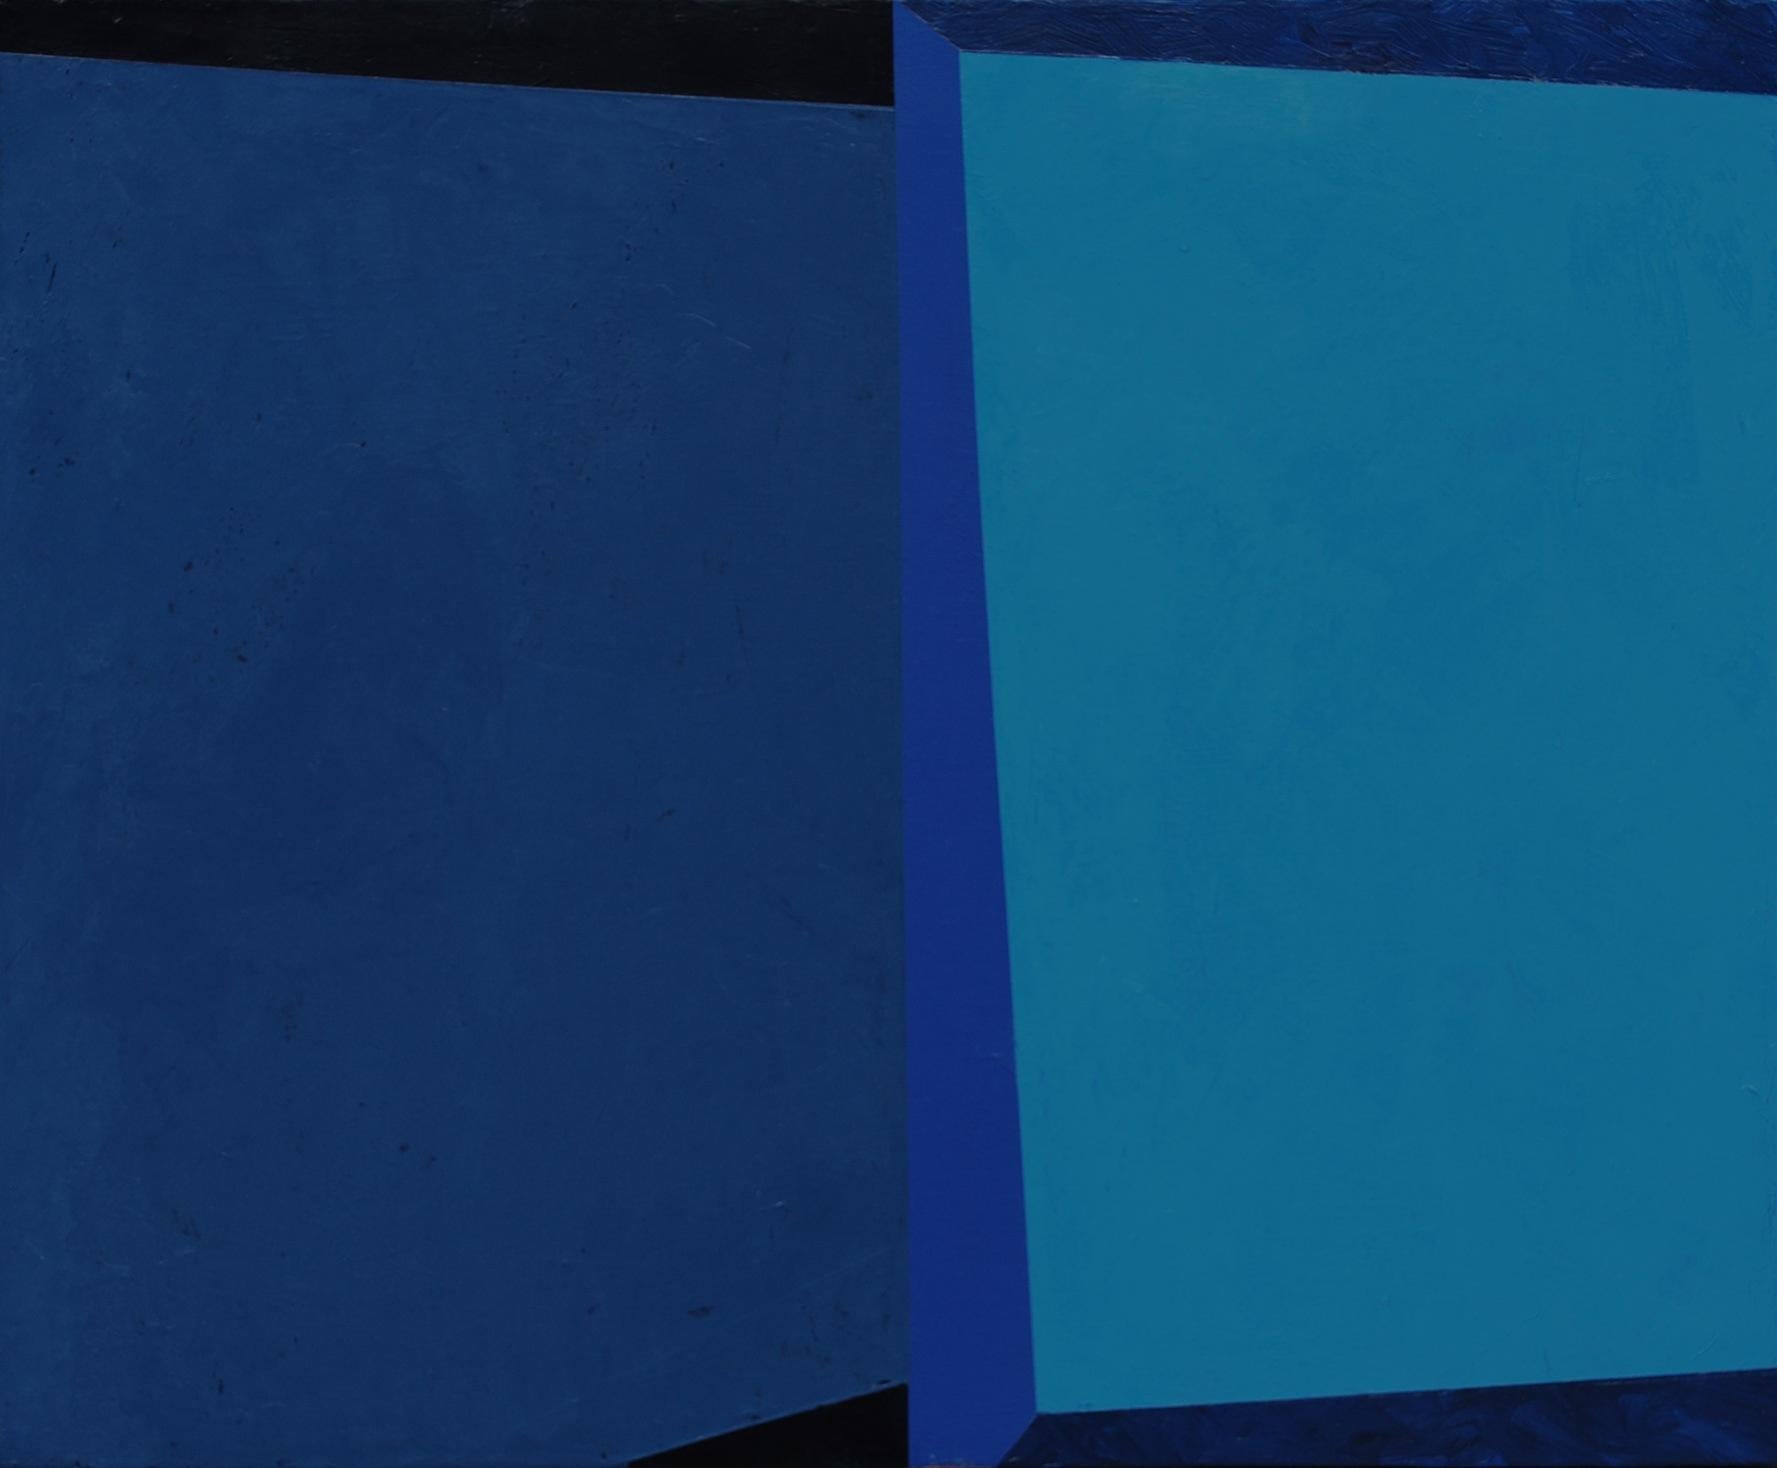 Macyn Bolt, O to C, 2018, Minimalist, acrylic on canvas, 20 x 24 x 2 inches